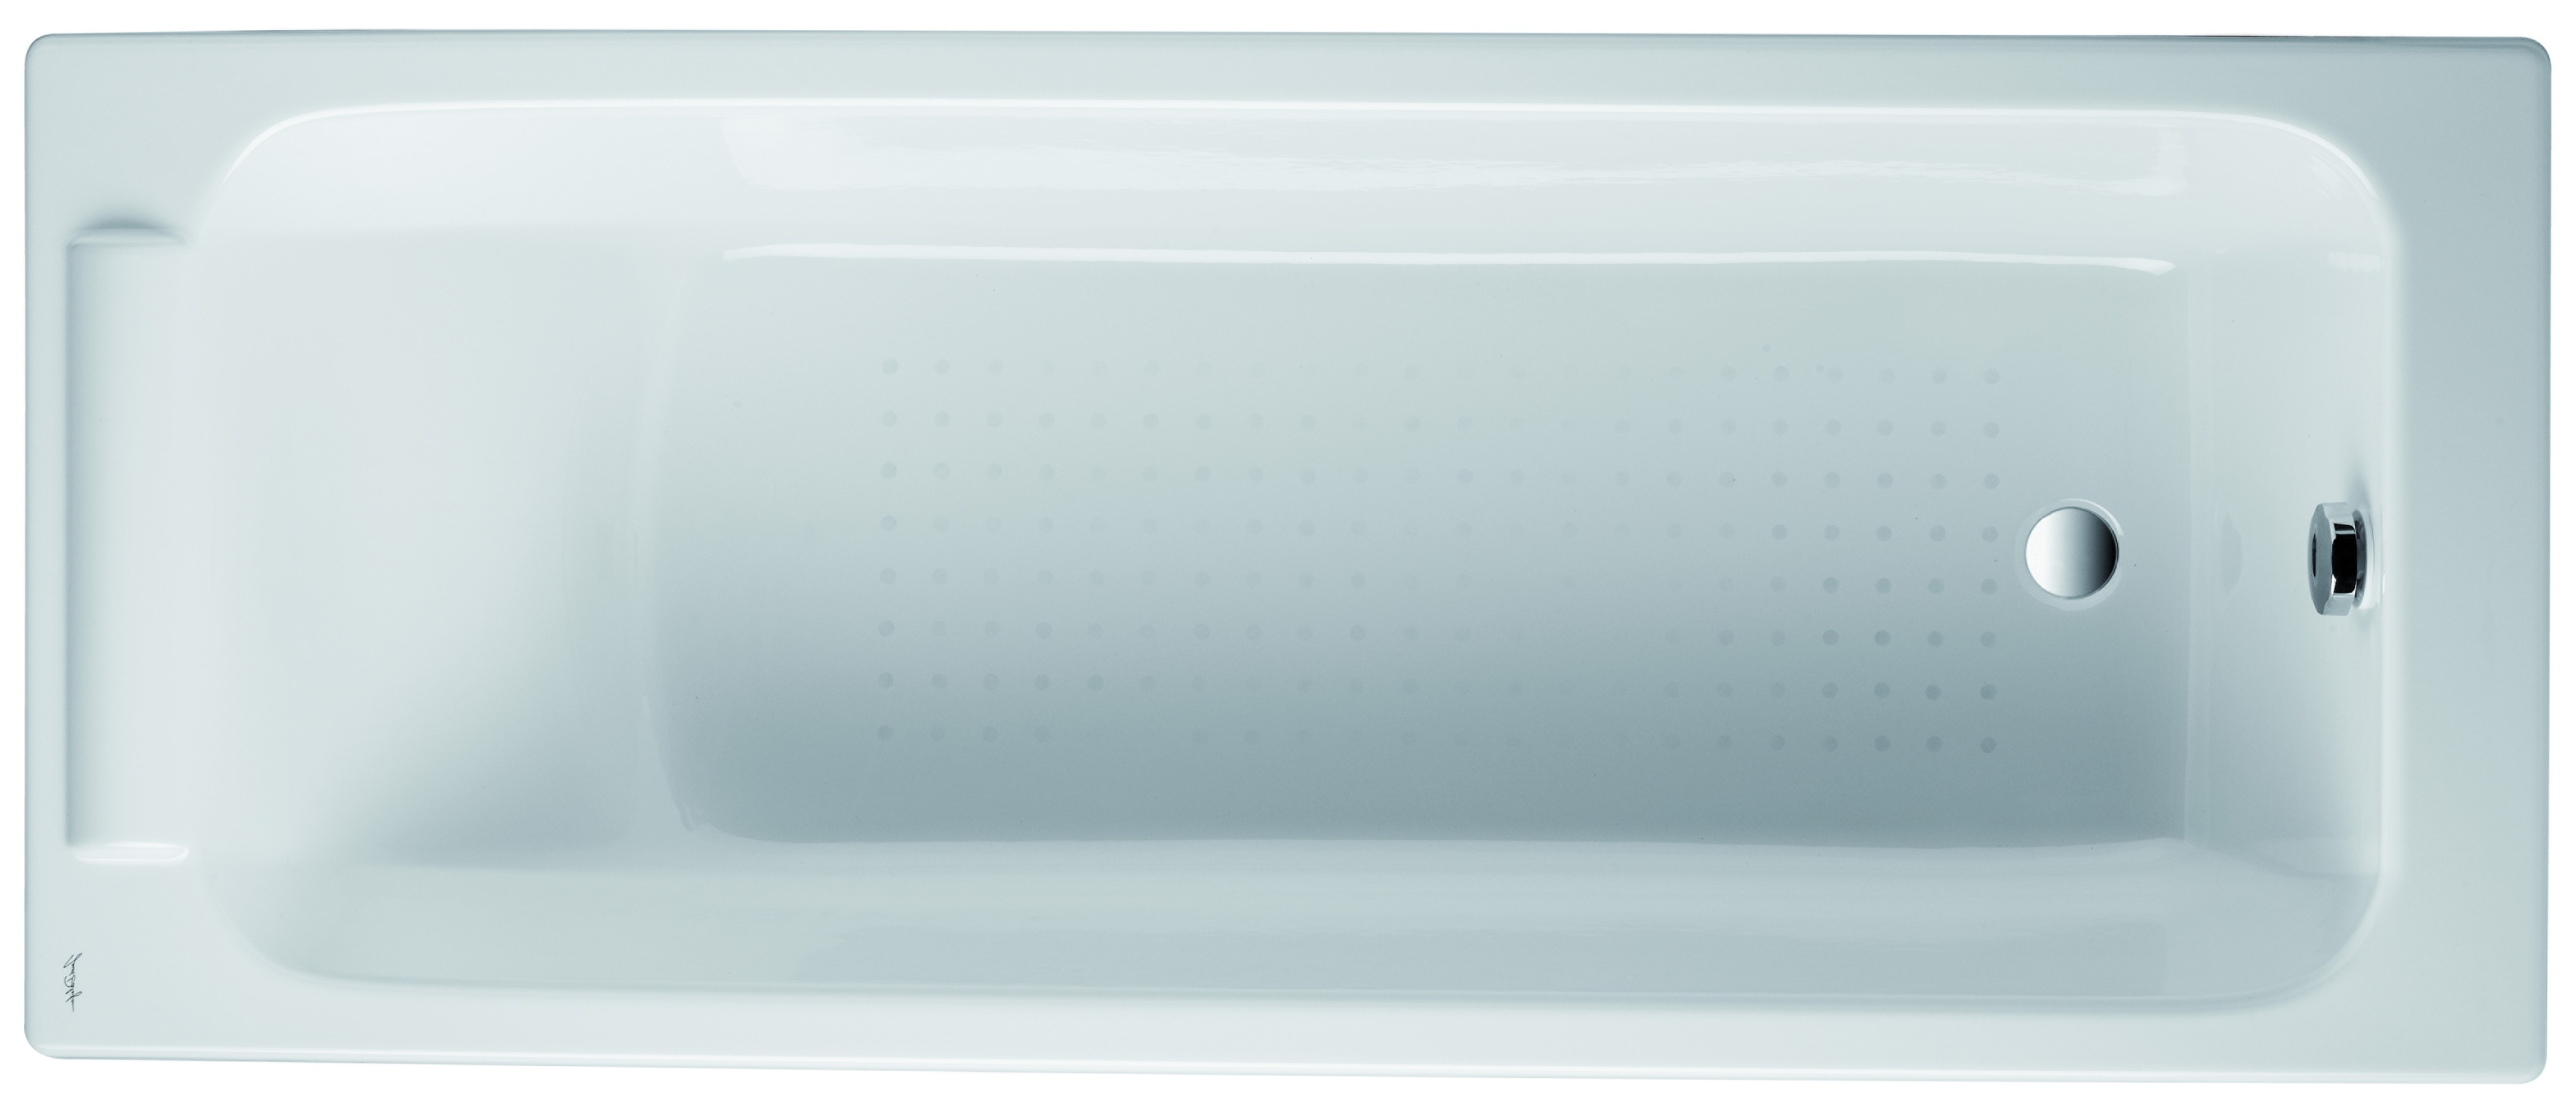 PARALLEL - Ванна чавунна без ручок з ніжками 170 х 70 см